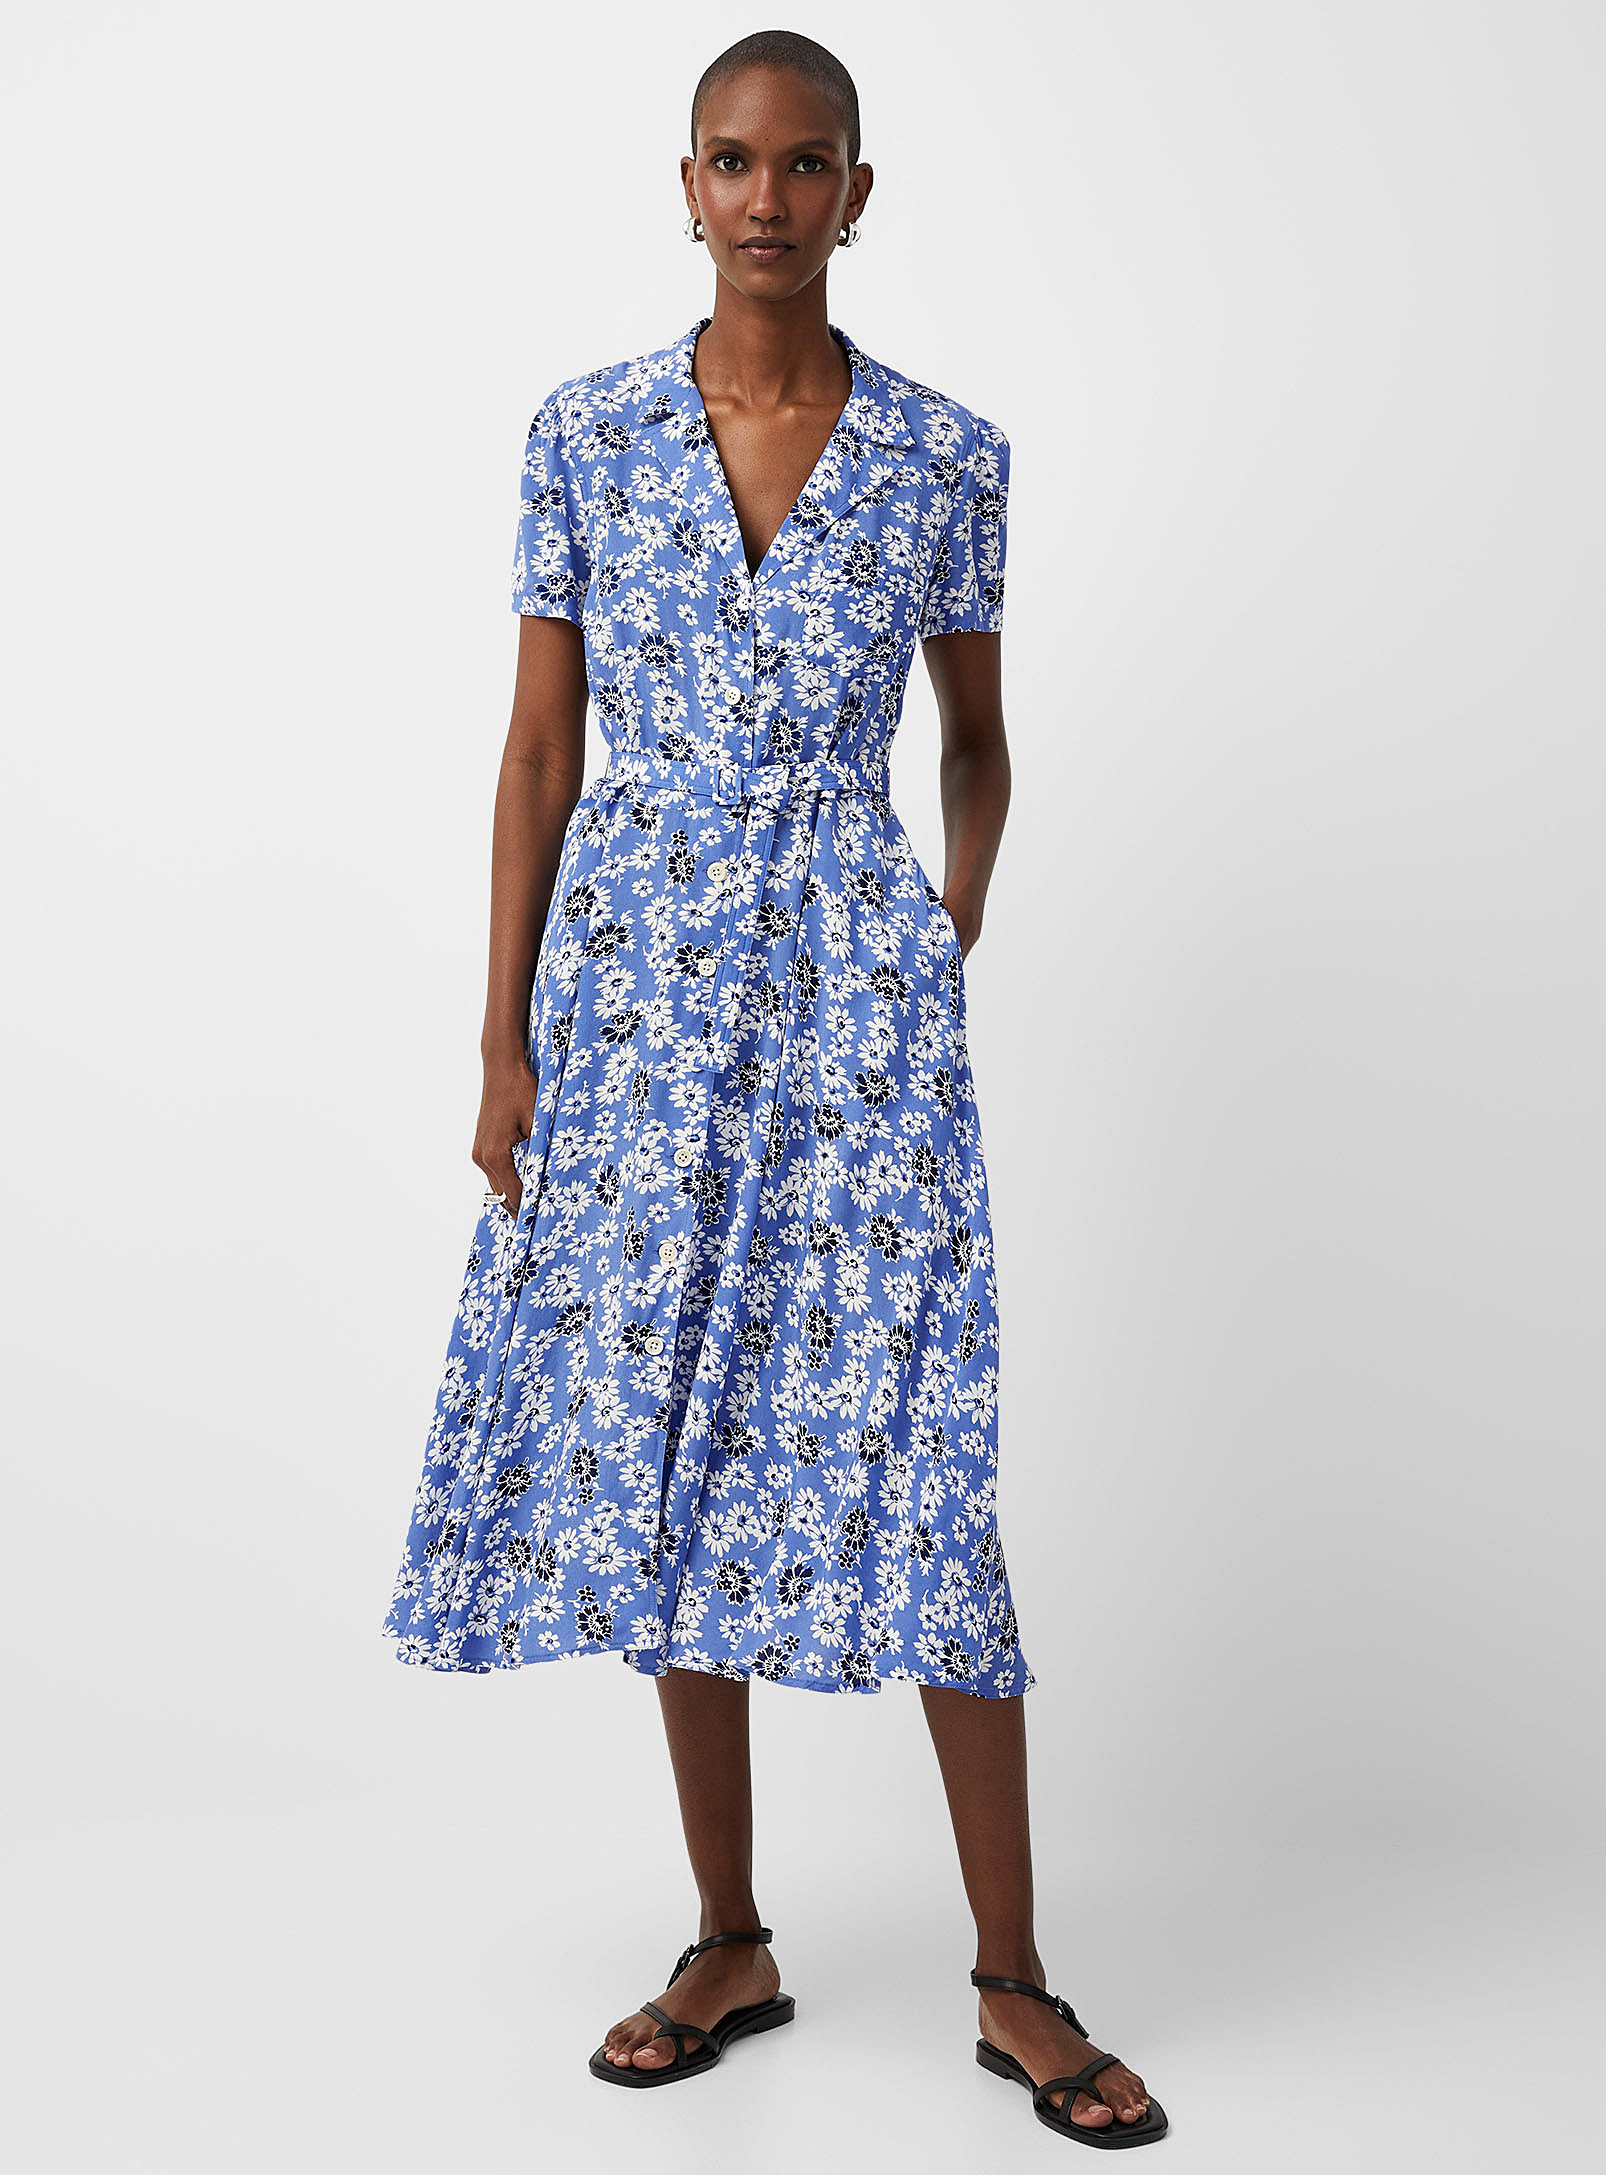 Polo Ralph Lauren - La robe ceinturée col cranté marguerites d'été